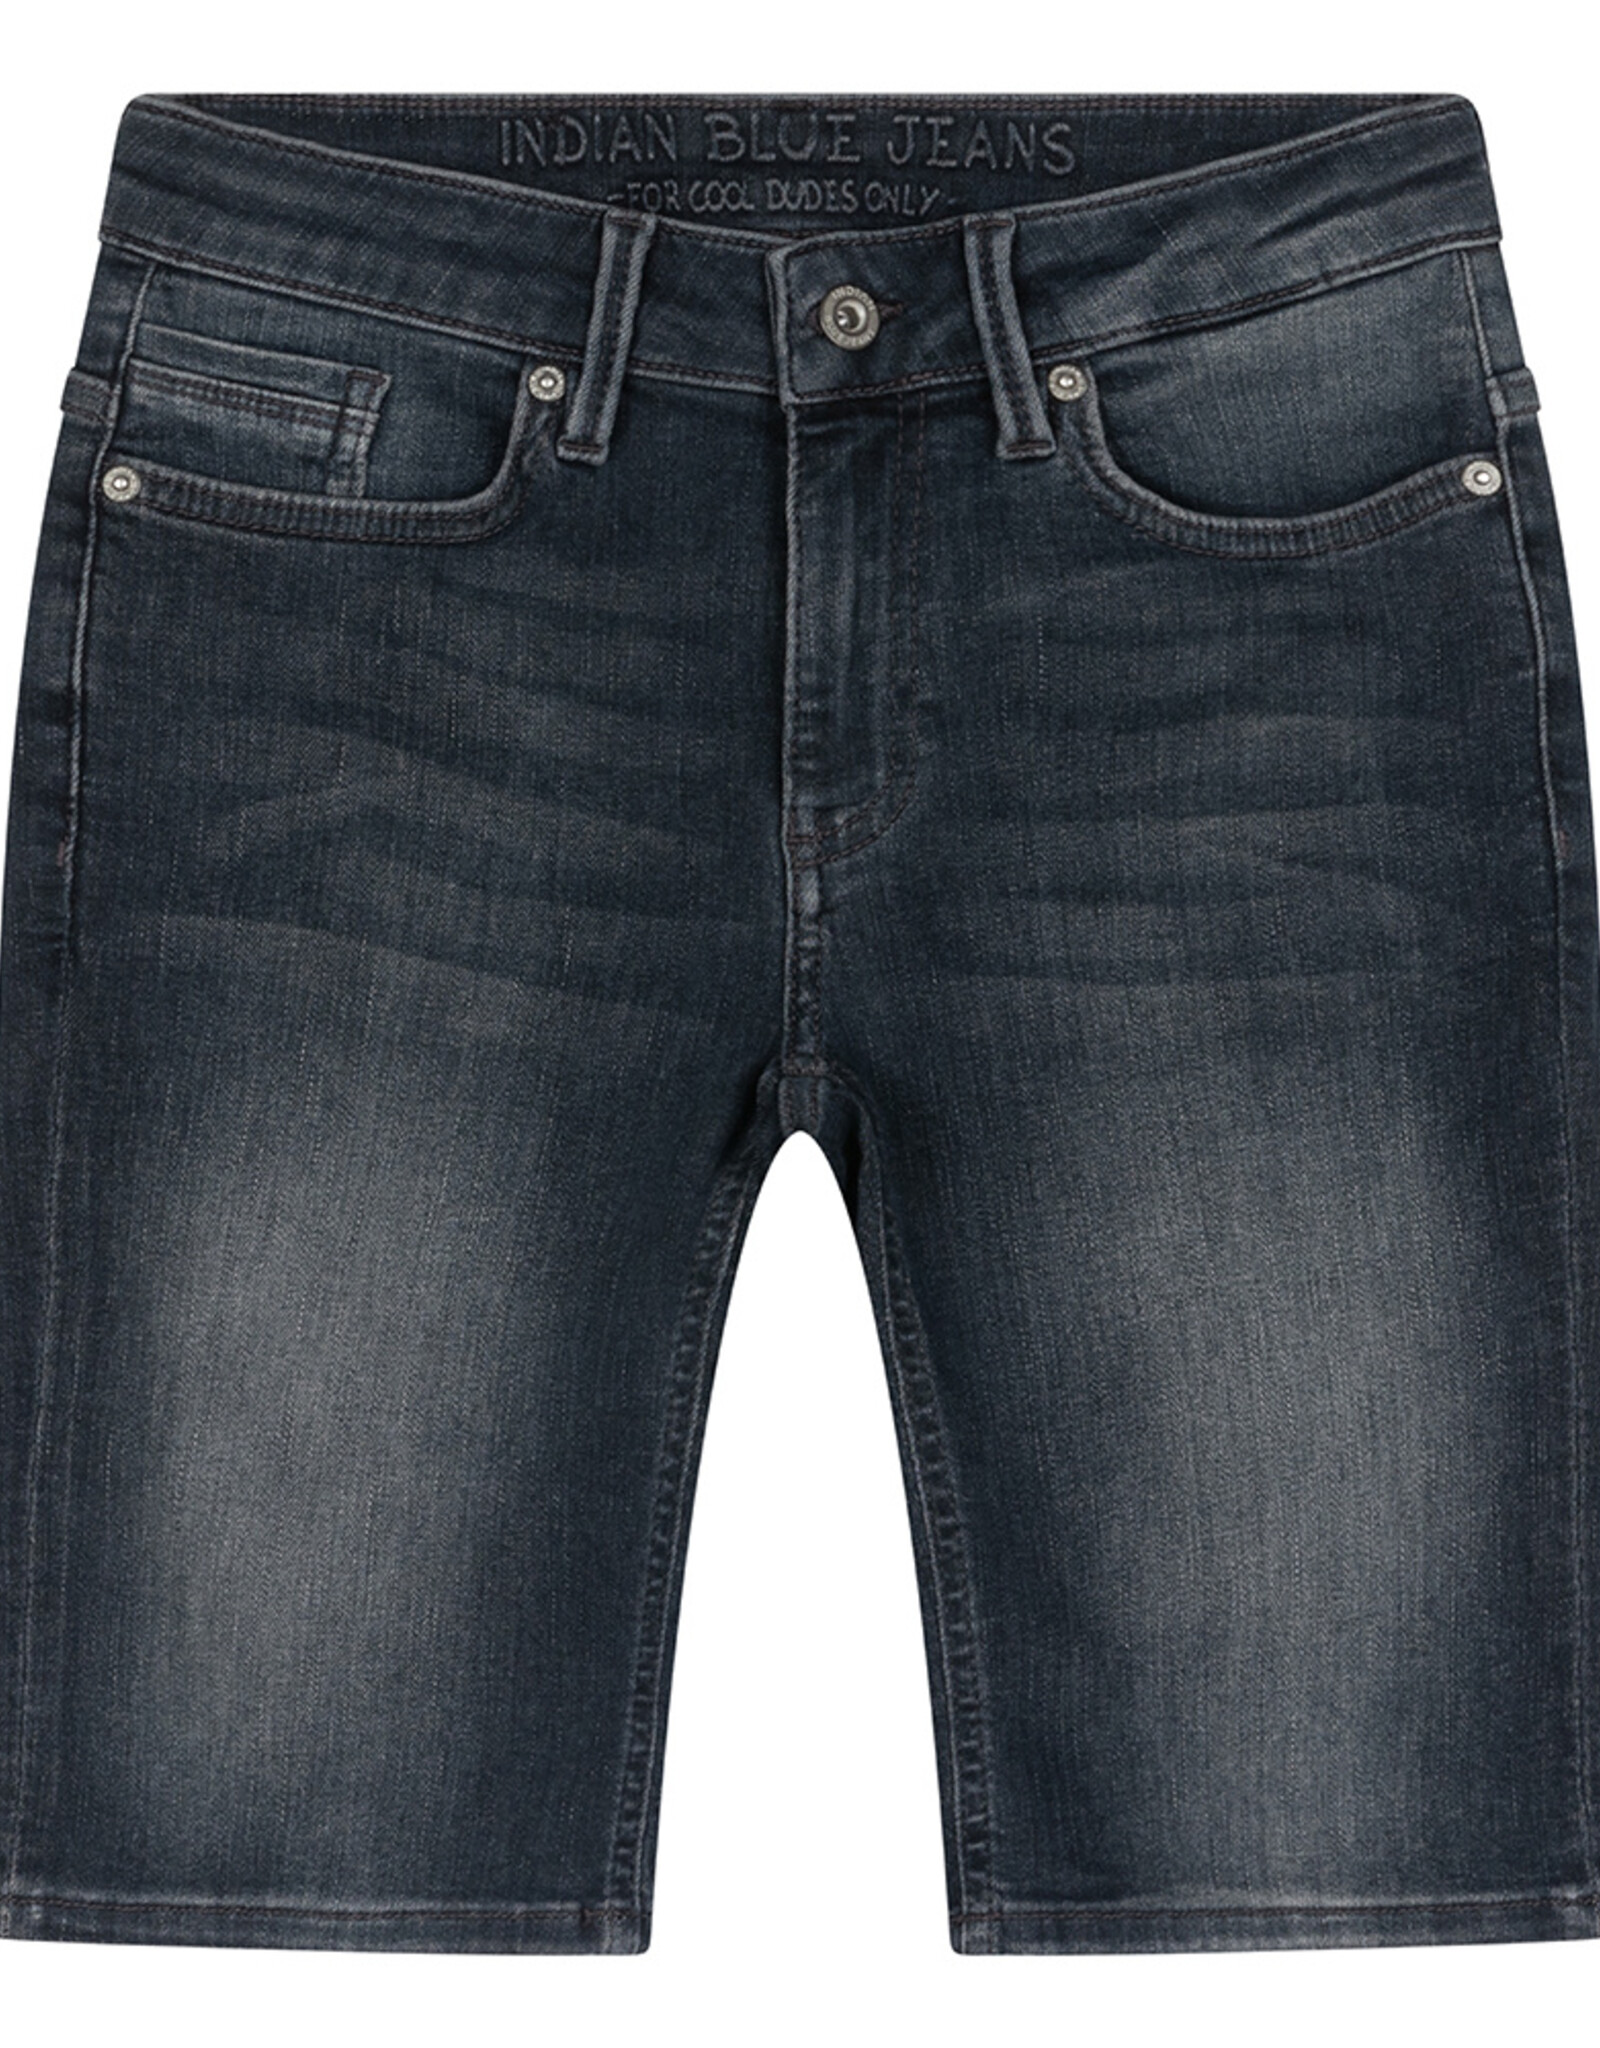 Indian blue jeans Korte spijkerbroek Andy 6506 - donkerblauw denim